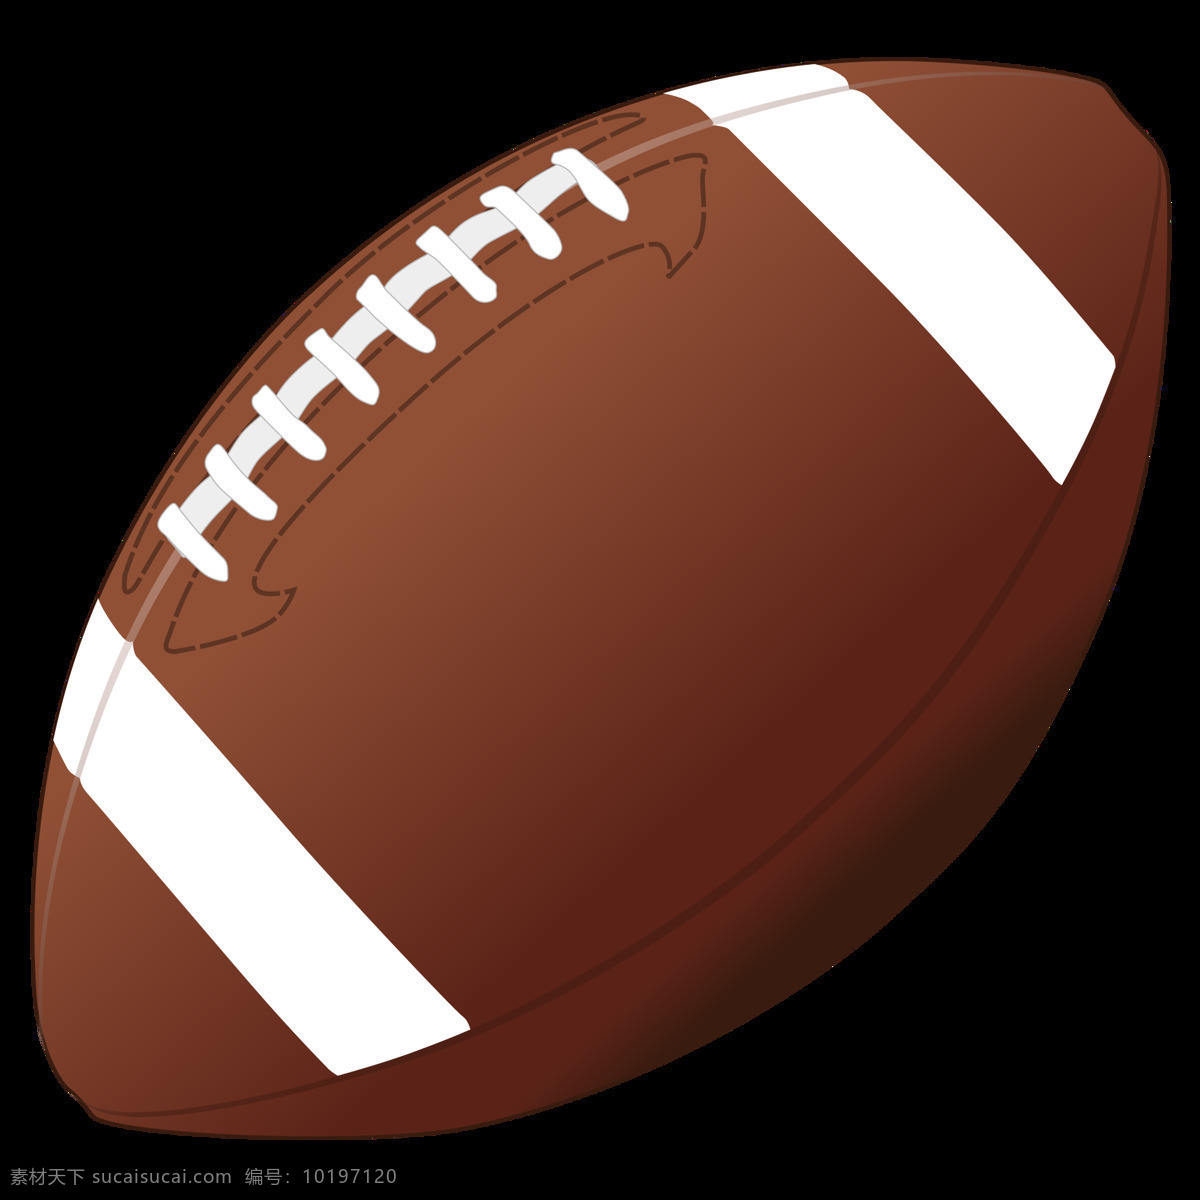 卡通 棕色 漂亮 橄榄球 免 抠 透明 手绘橄榄球 美国橄榄球队 美国 大联盟 俱乐部 元素 橄榄球俱乐部 标志